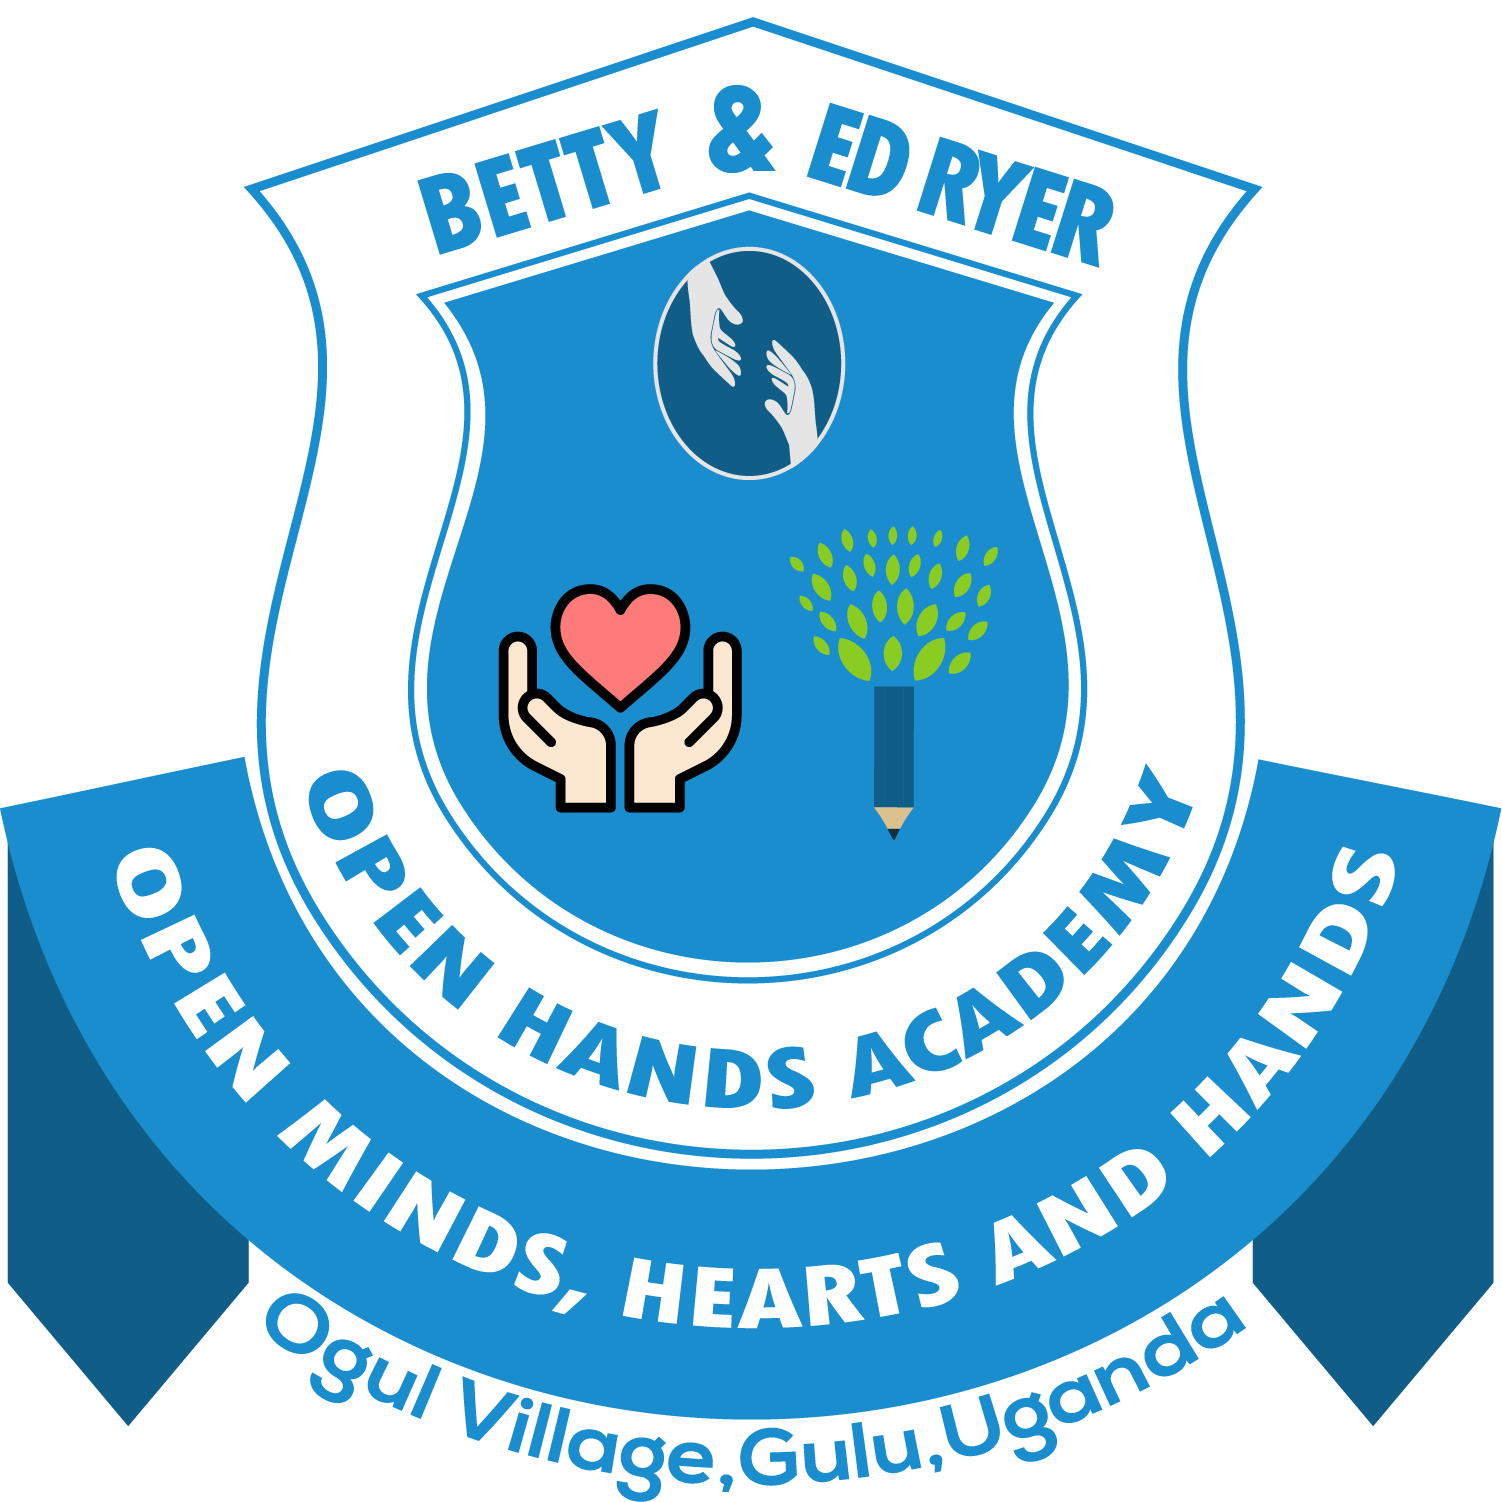 Logo for the Amigos Internacionales school in Ogul Village, Open Hands Academy